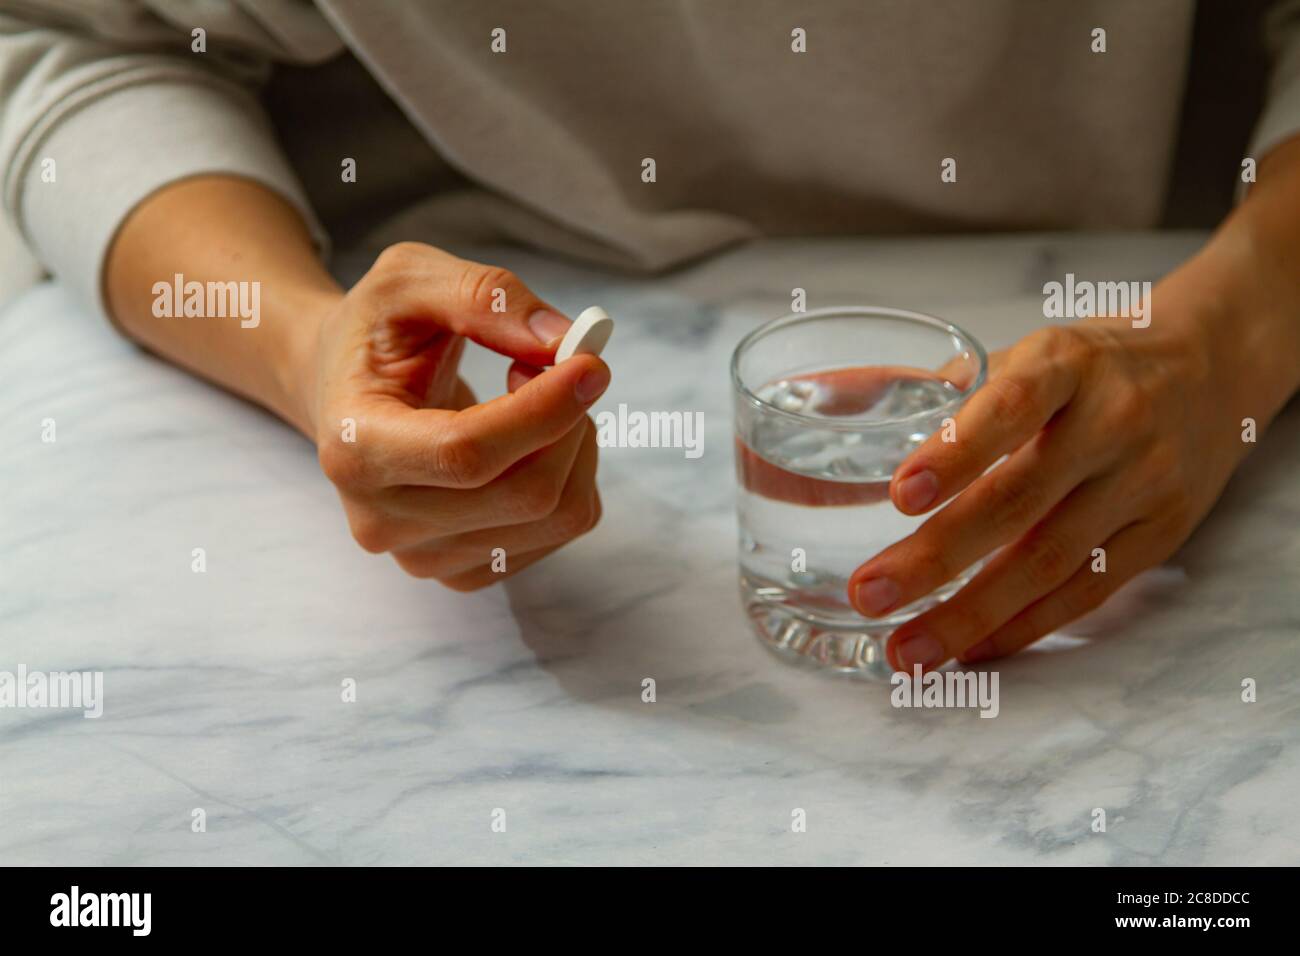 Une femme est vue comme elle tient une pilule dans une main et un verre d'eau de l'autre main. Elle est sur le point de prendre le médicament avec une gorgée d'eau. Banque D'Images